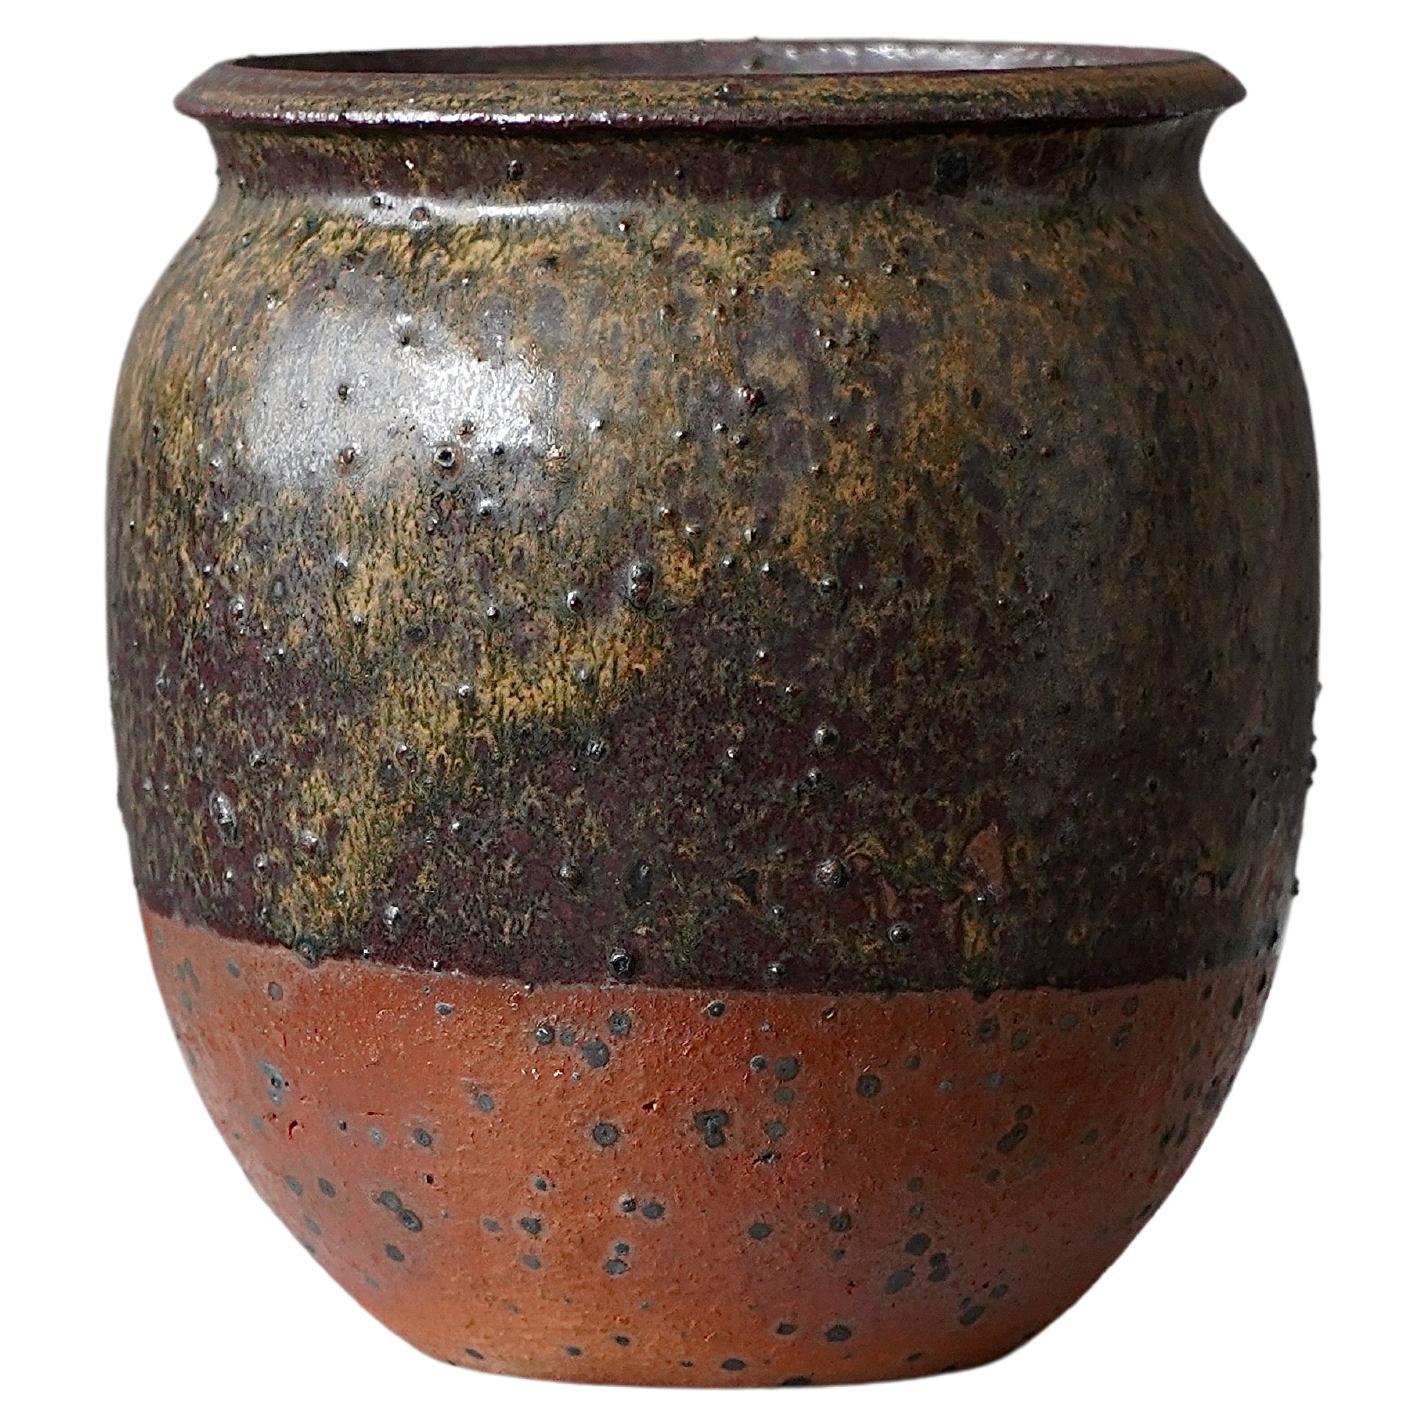 Vase aus Steingut des schwedischen Keramikers Rolf Palm, 1974